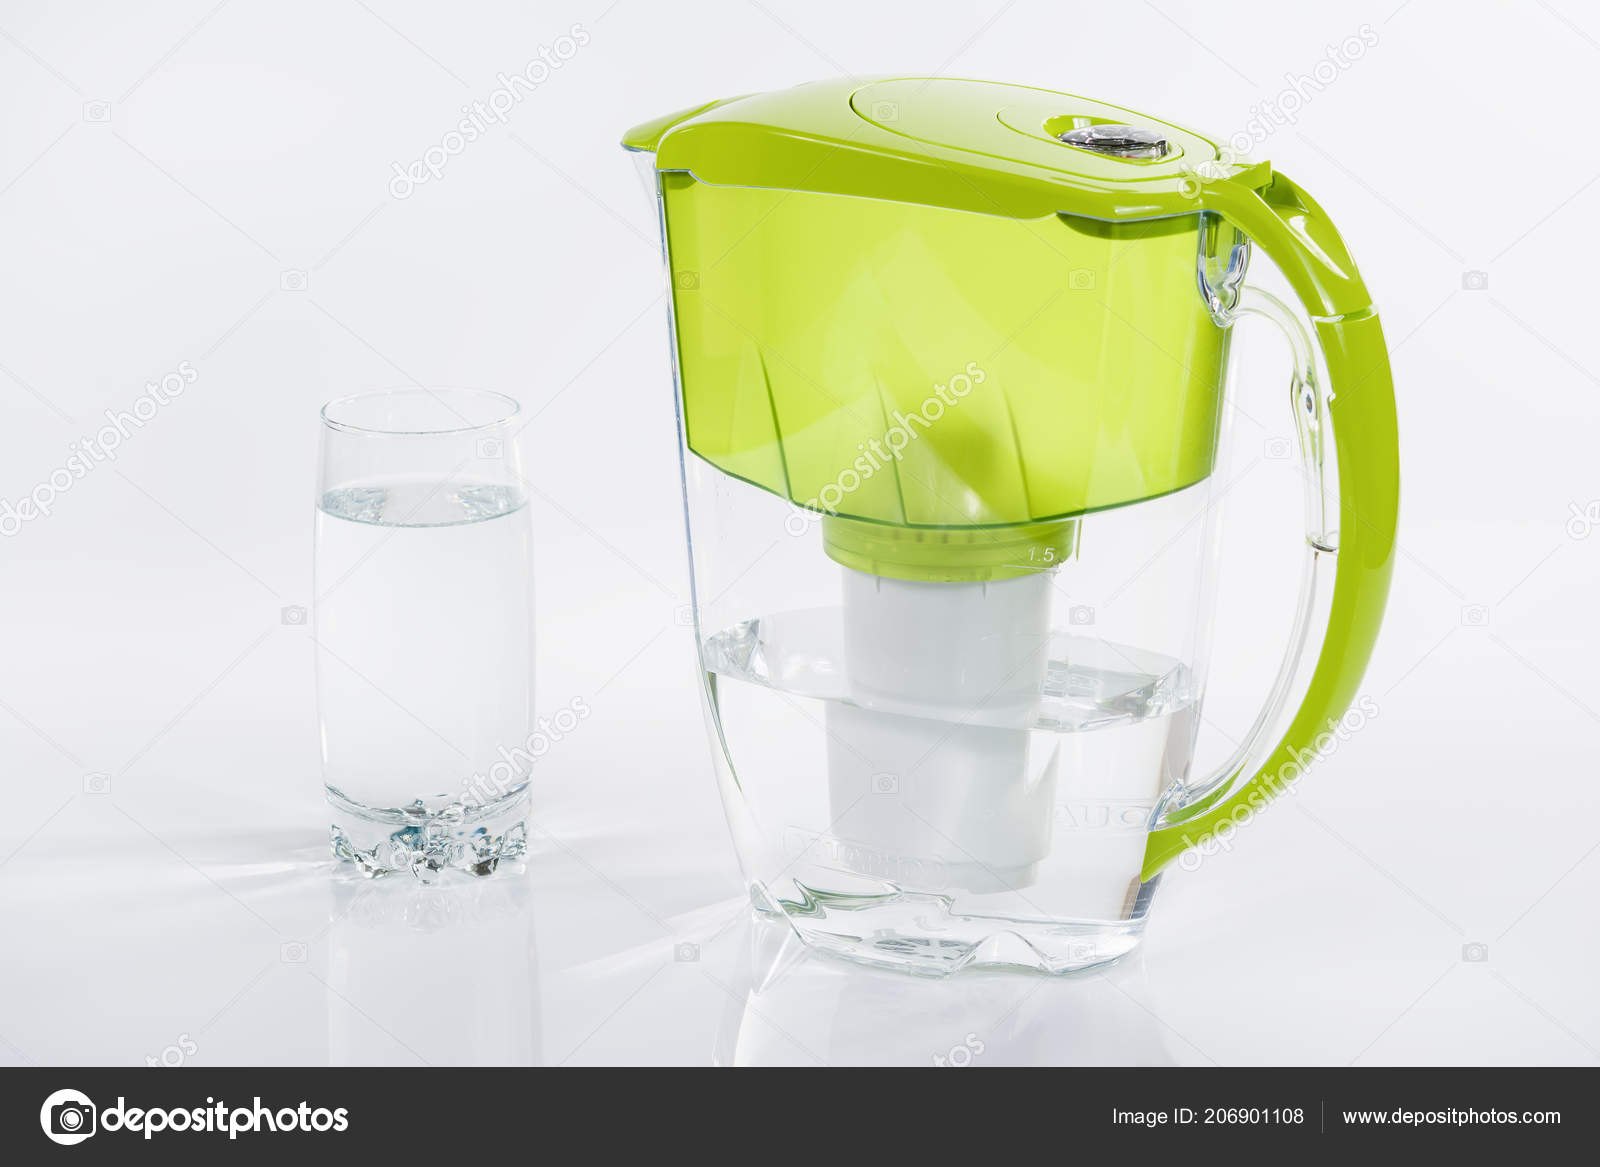 AQUAPHOR filter jugs